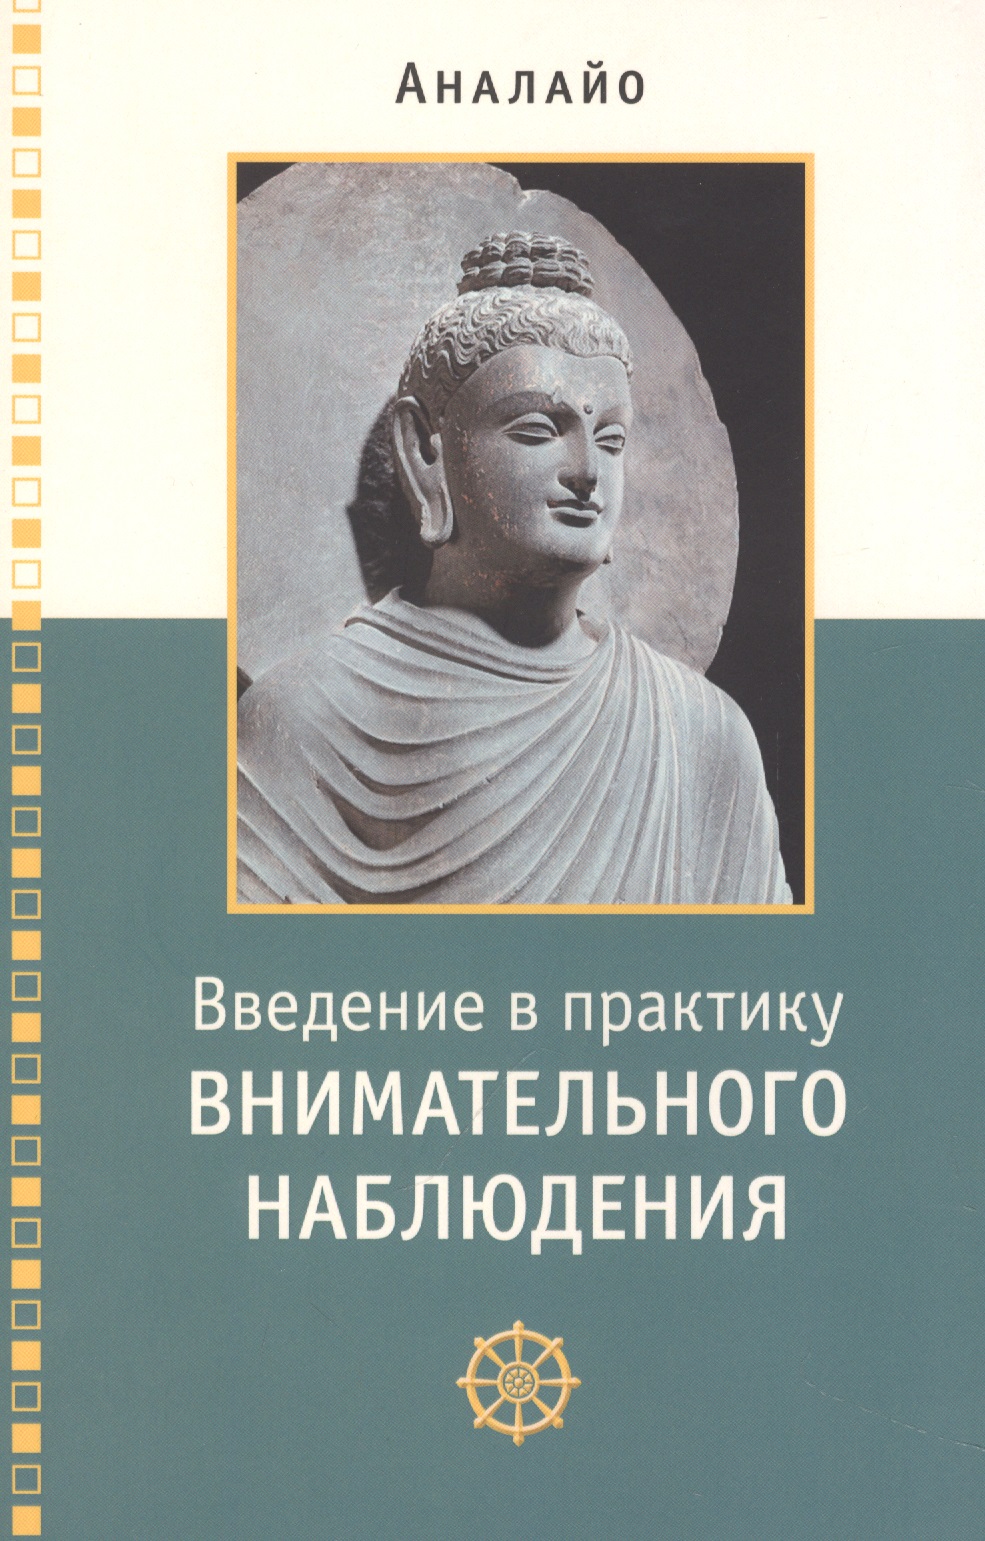 Аналайо Бхиккху Введение в практику внимательного наблюдения Буддийское обоснование и практические занятия бхикку а перспективы сатипаттханы